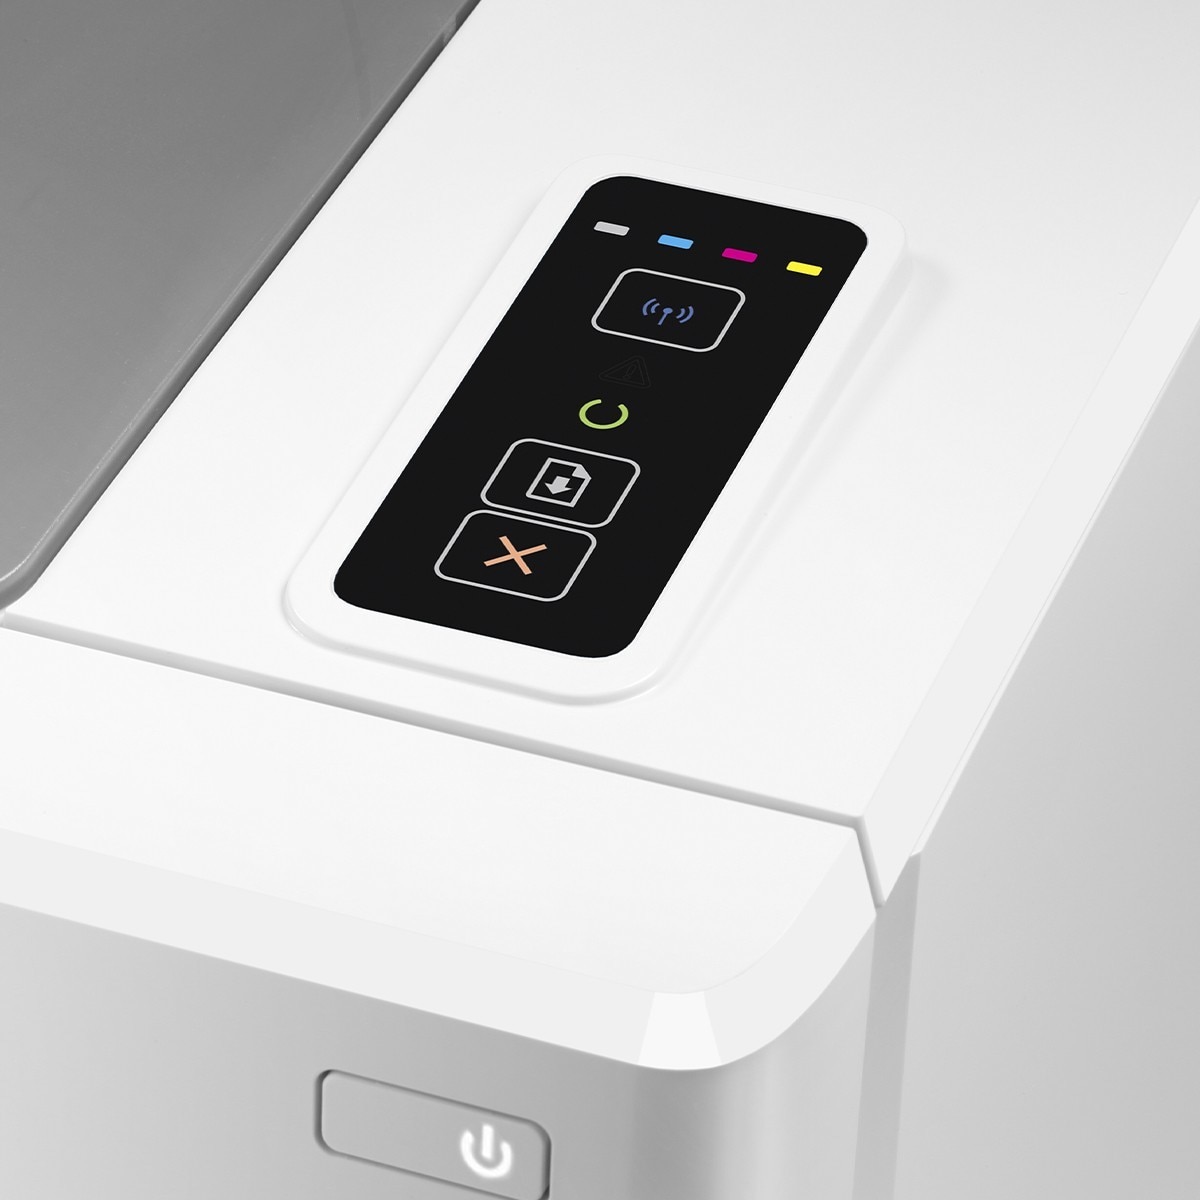 HP 彩色雷射單功網路印表機 M155NW (內含2黑3彩碳粉匣)